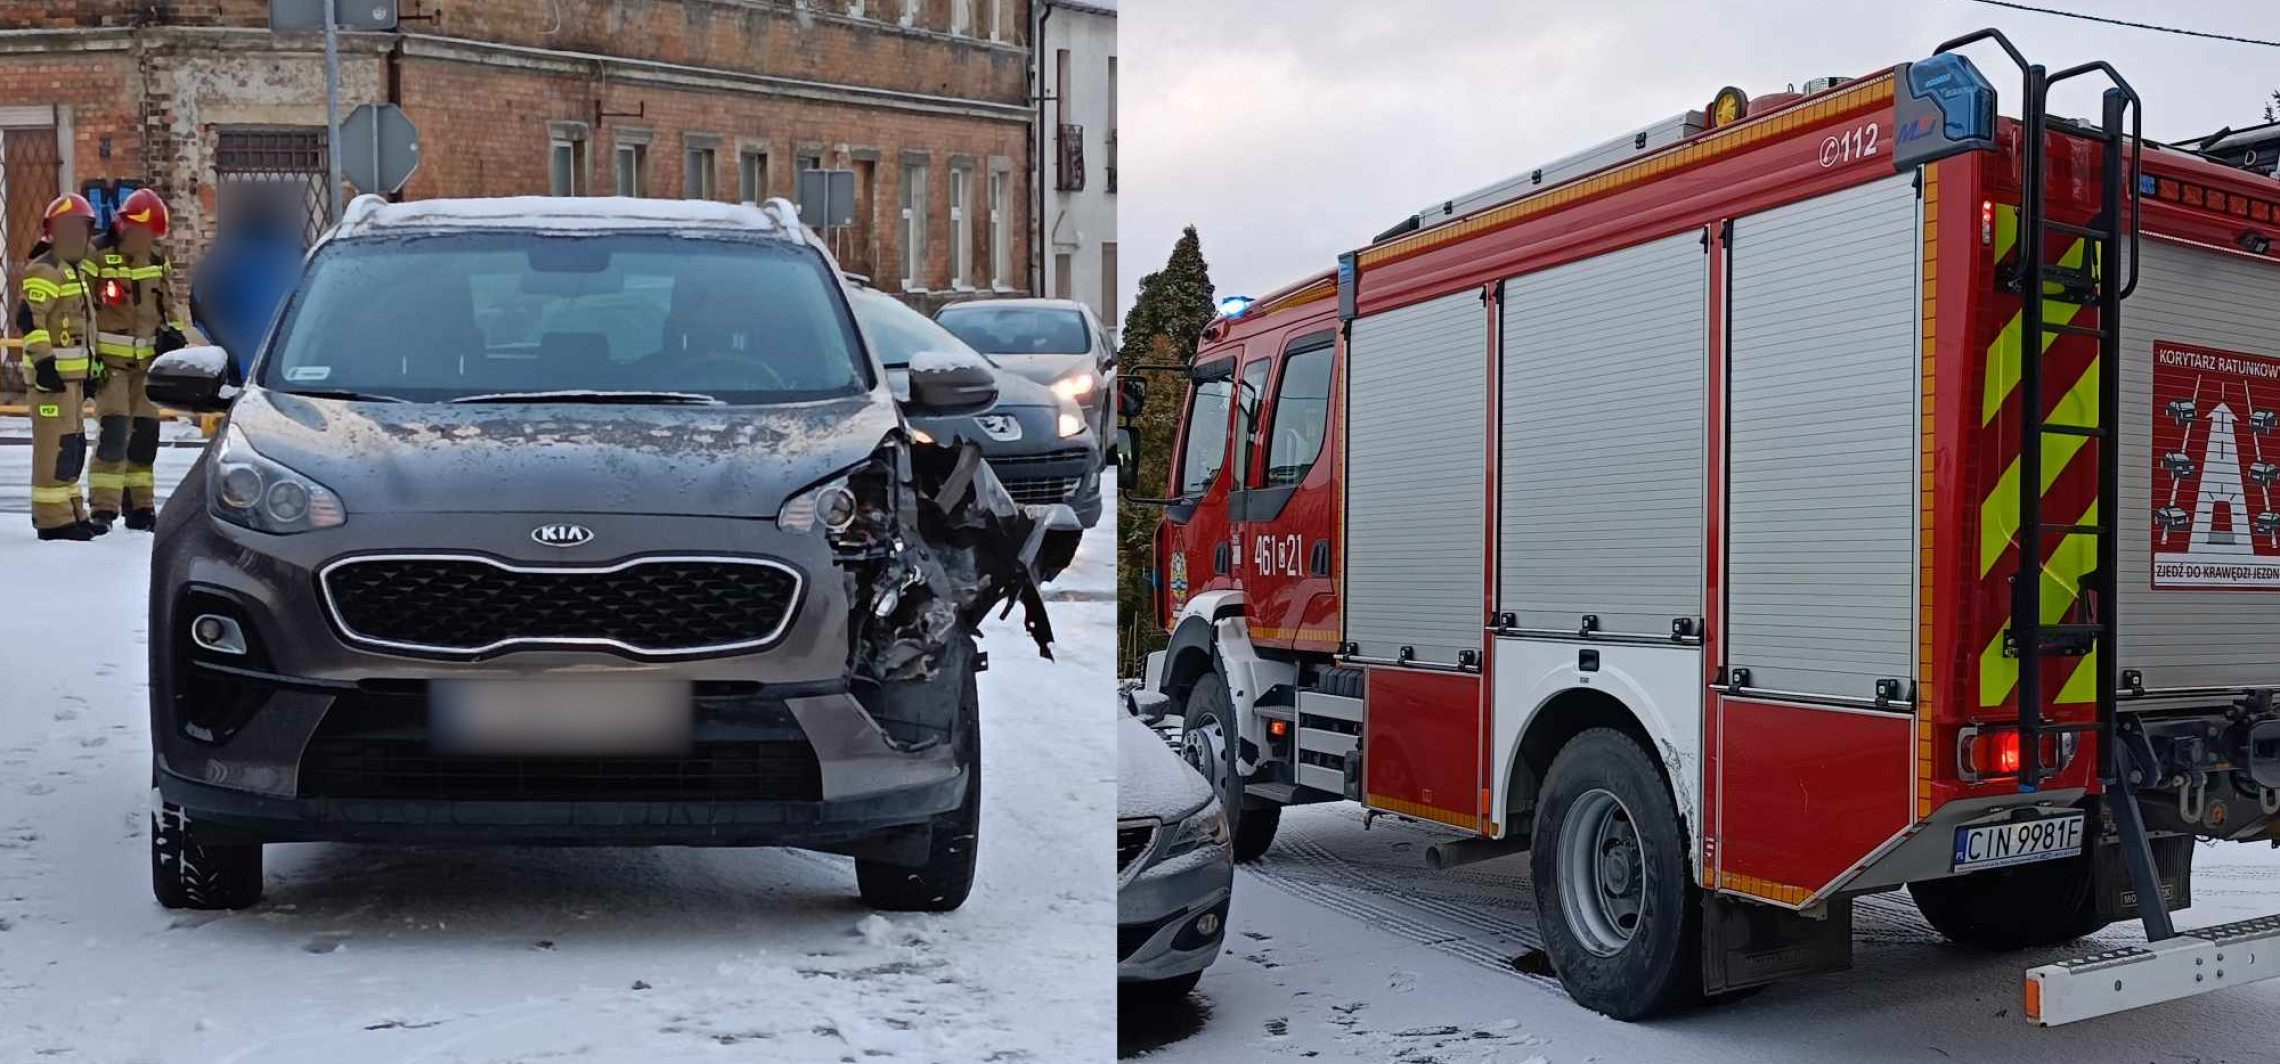 Inowrocław - Strażacy jadący do wypadku sami mieli stłuczkę